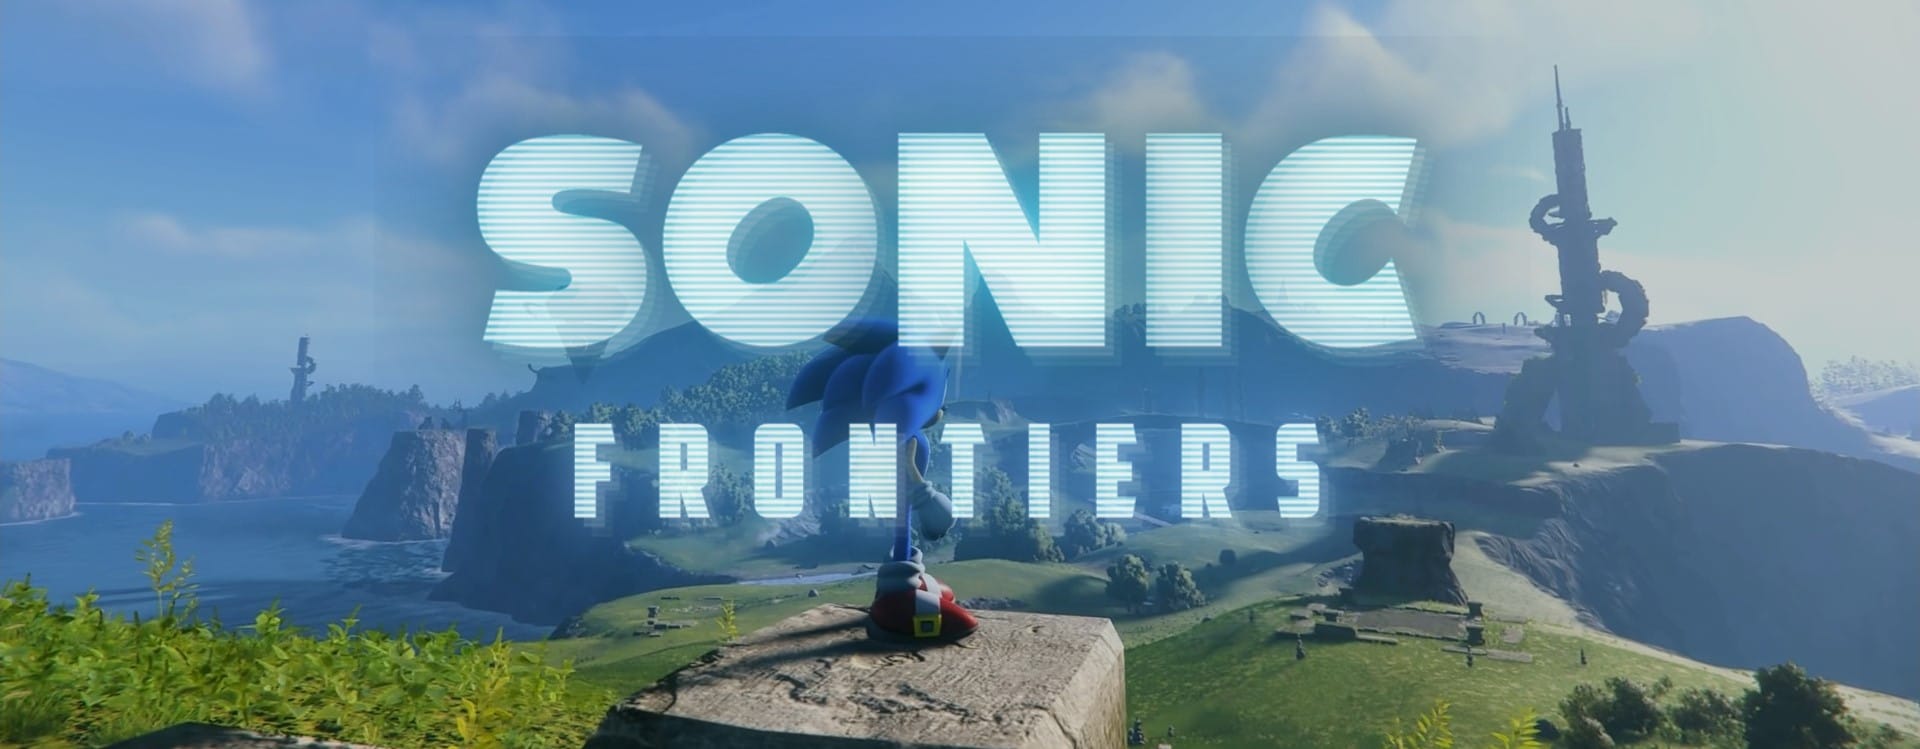 sonic frontiers banner